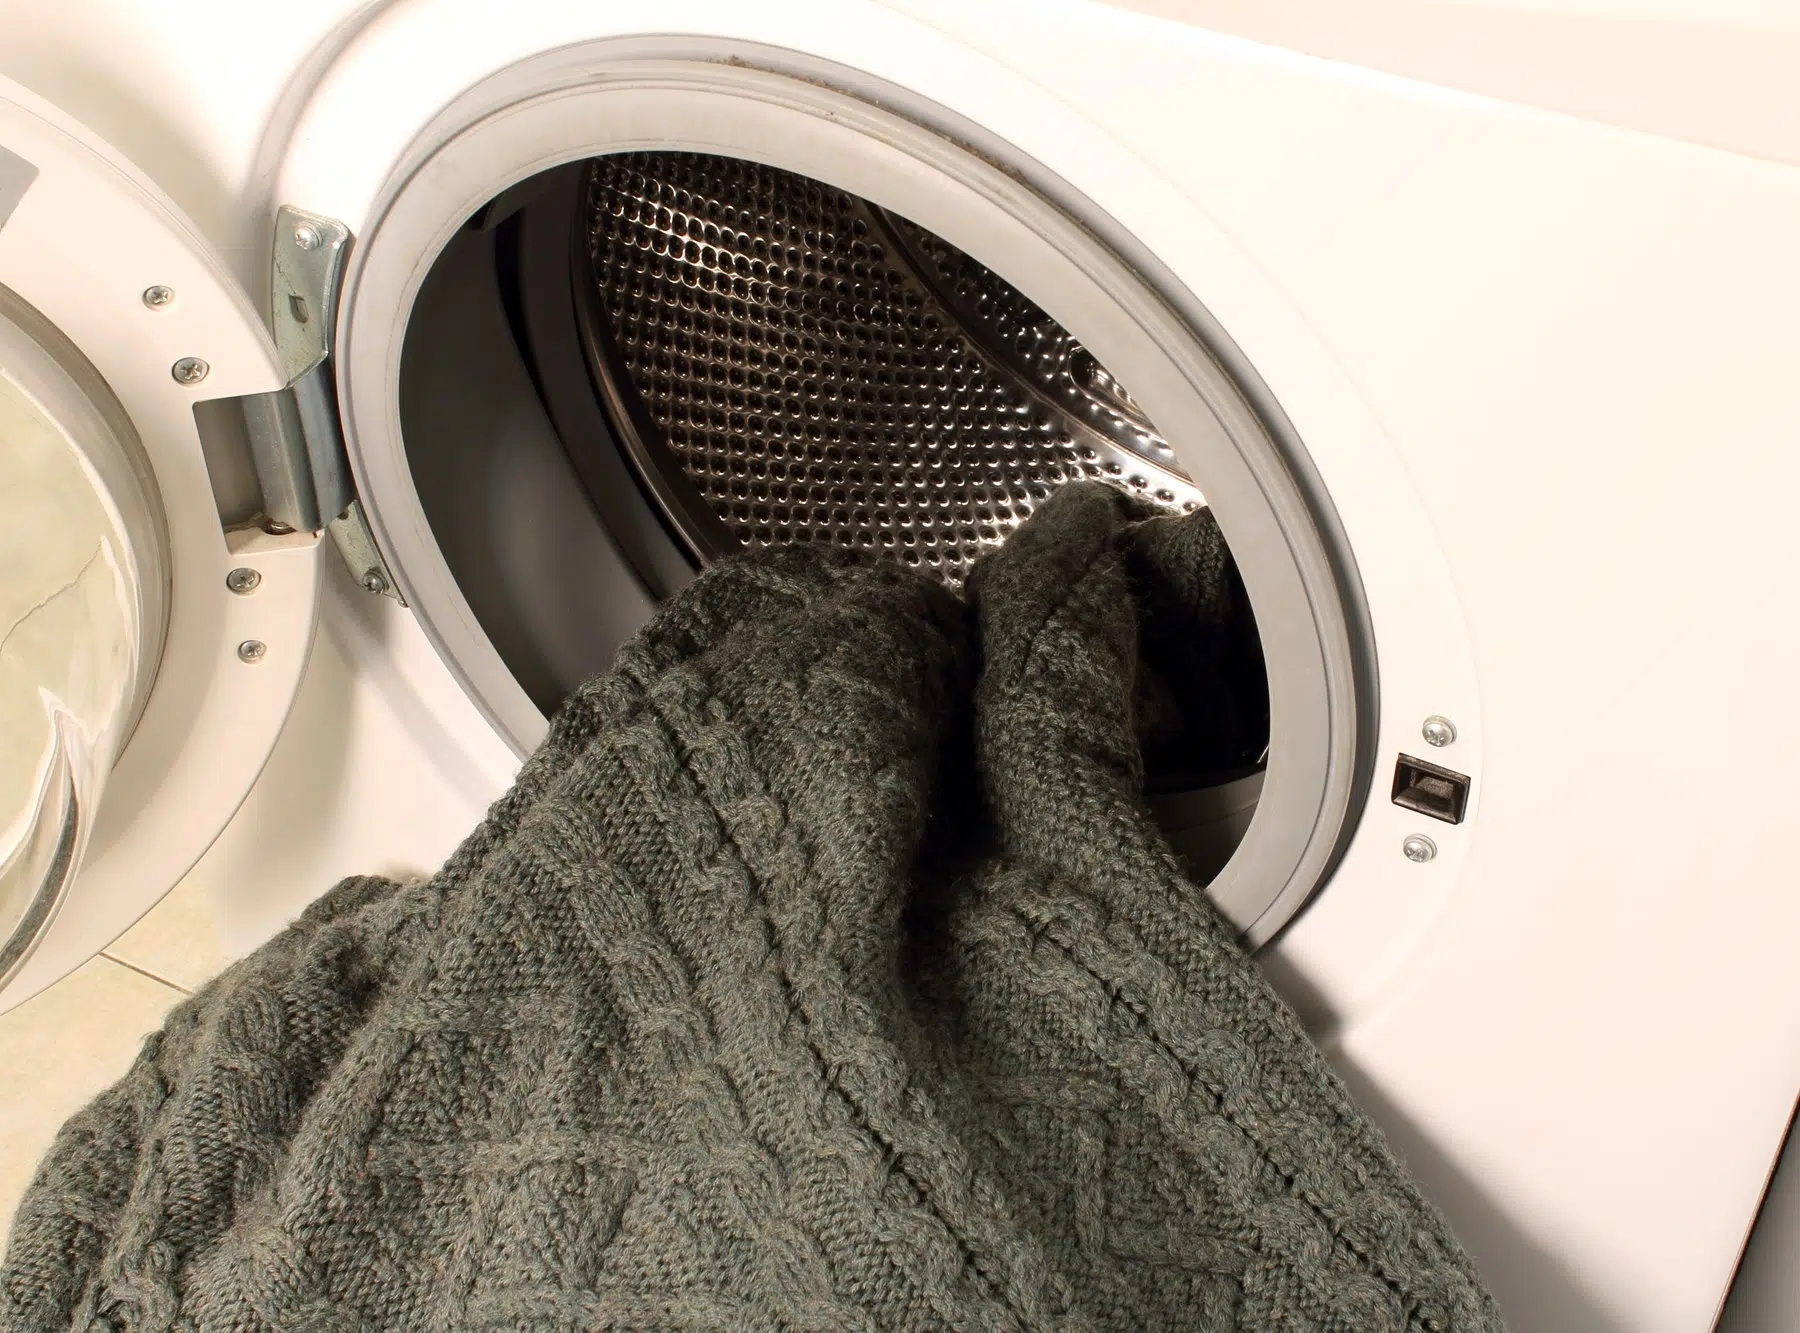 Machine washing a sweater